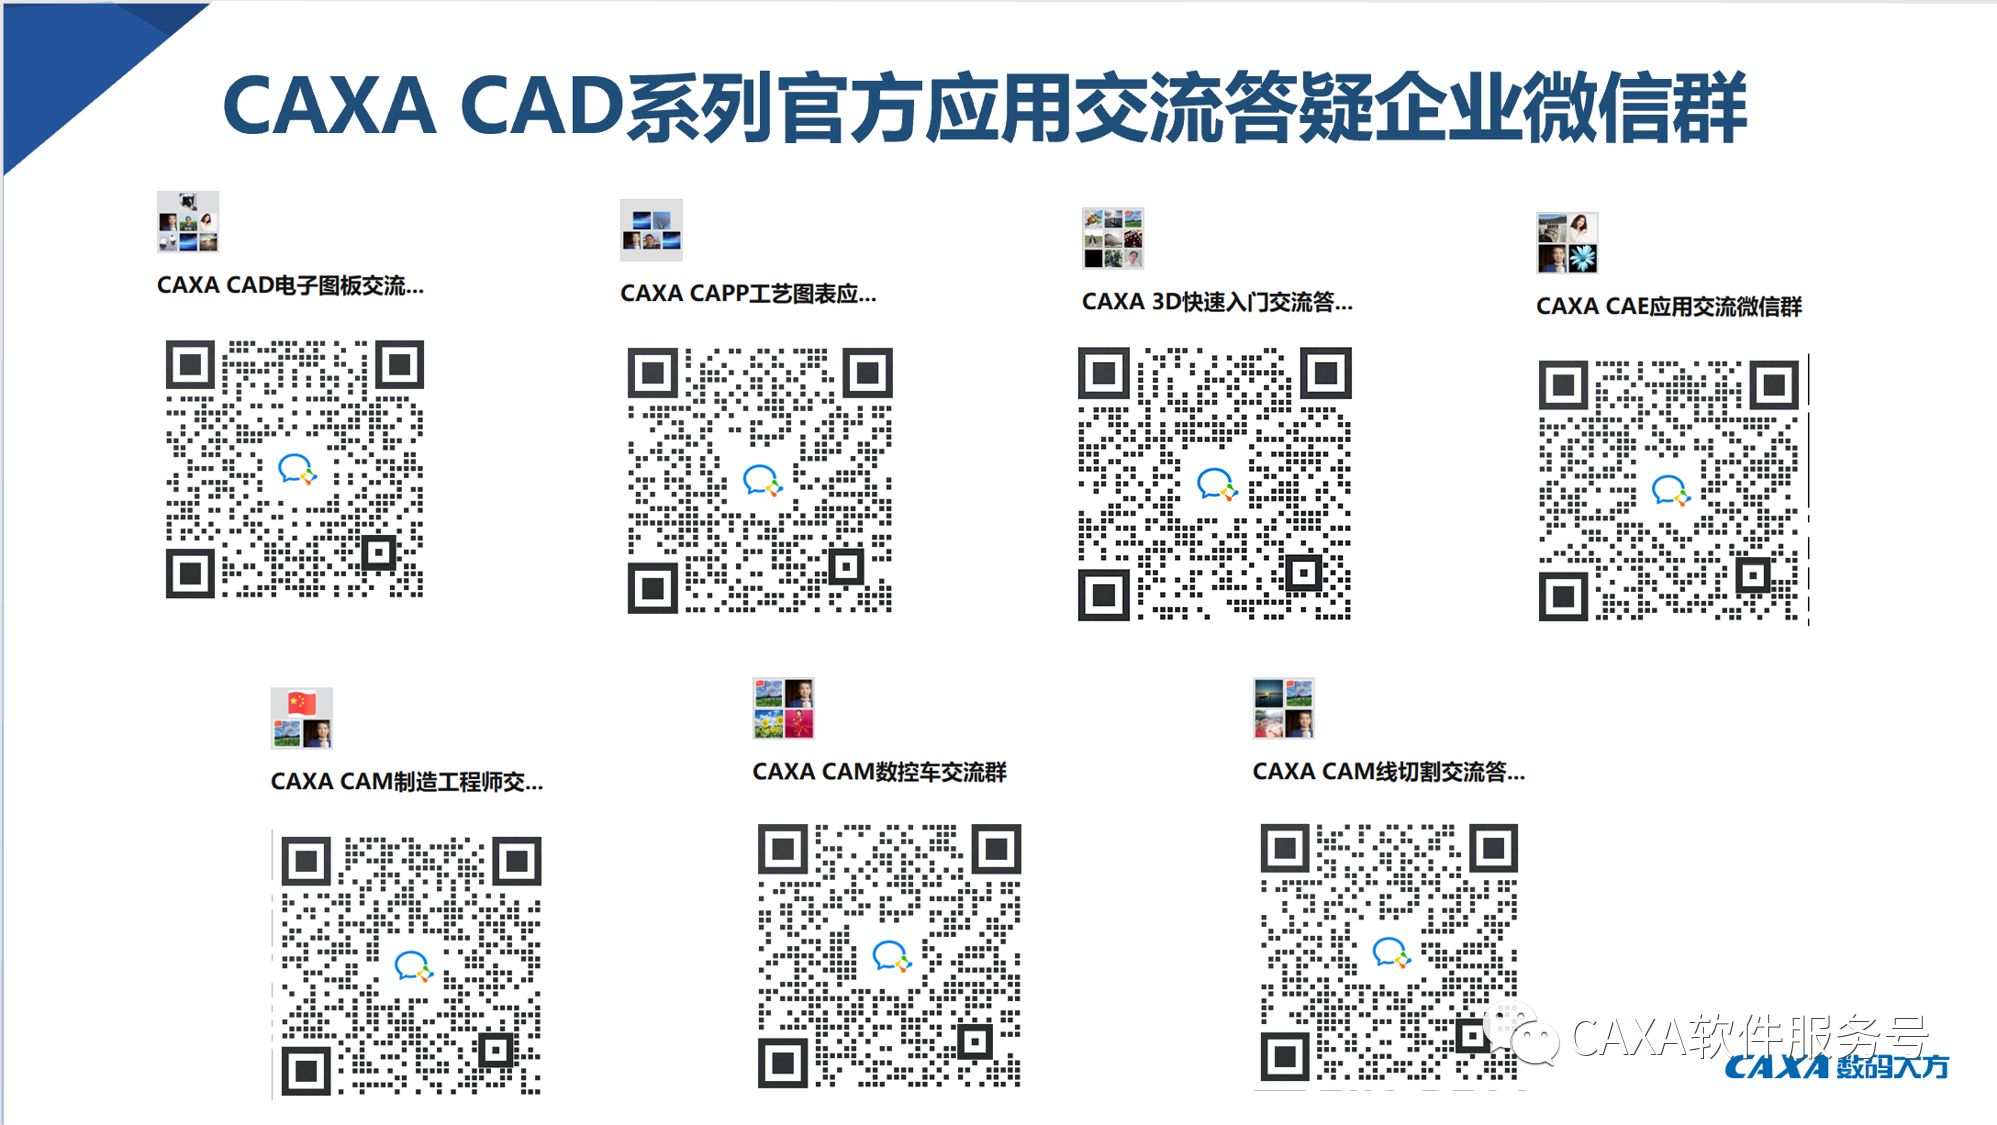 CAXA CAD係列微信群